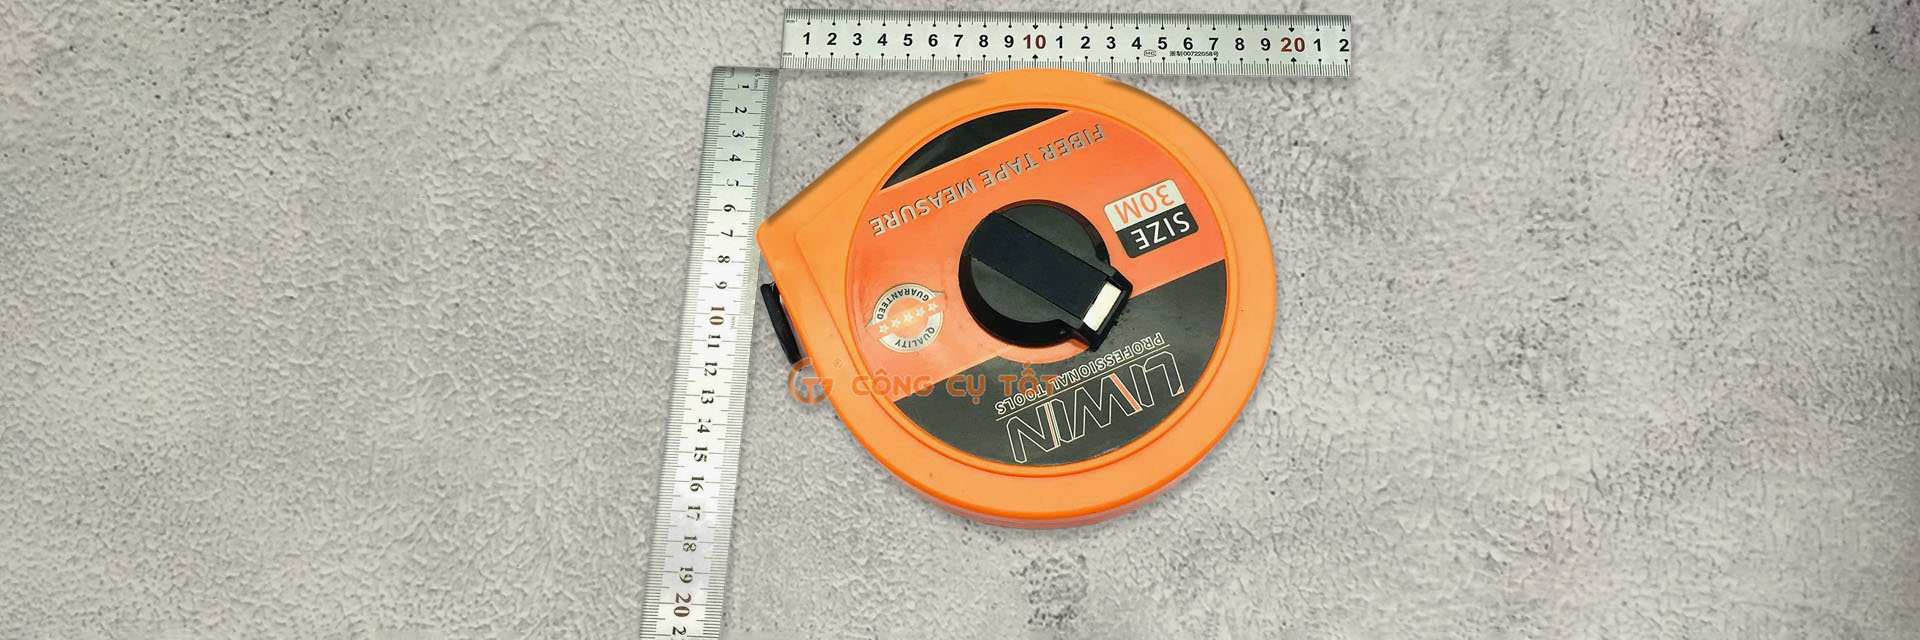 Measuring Tools - Dụng cụ đo lường Asaki